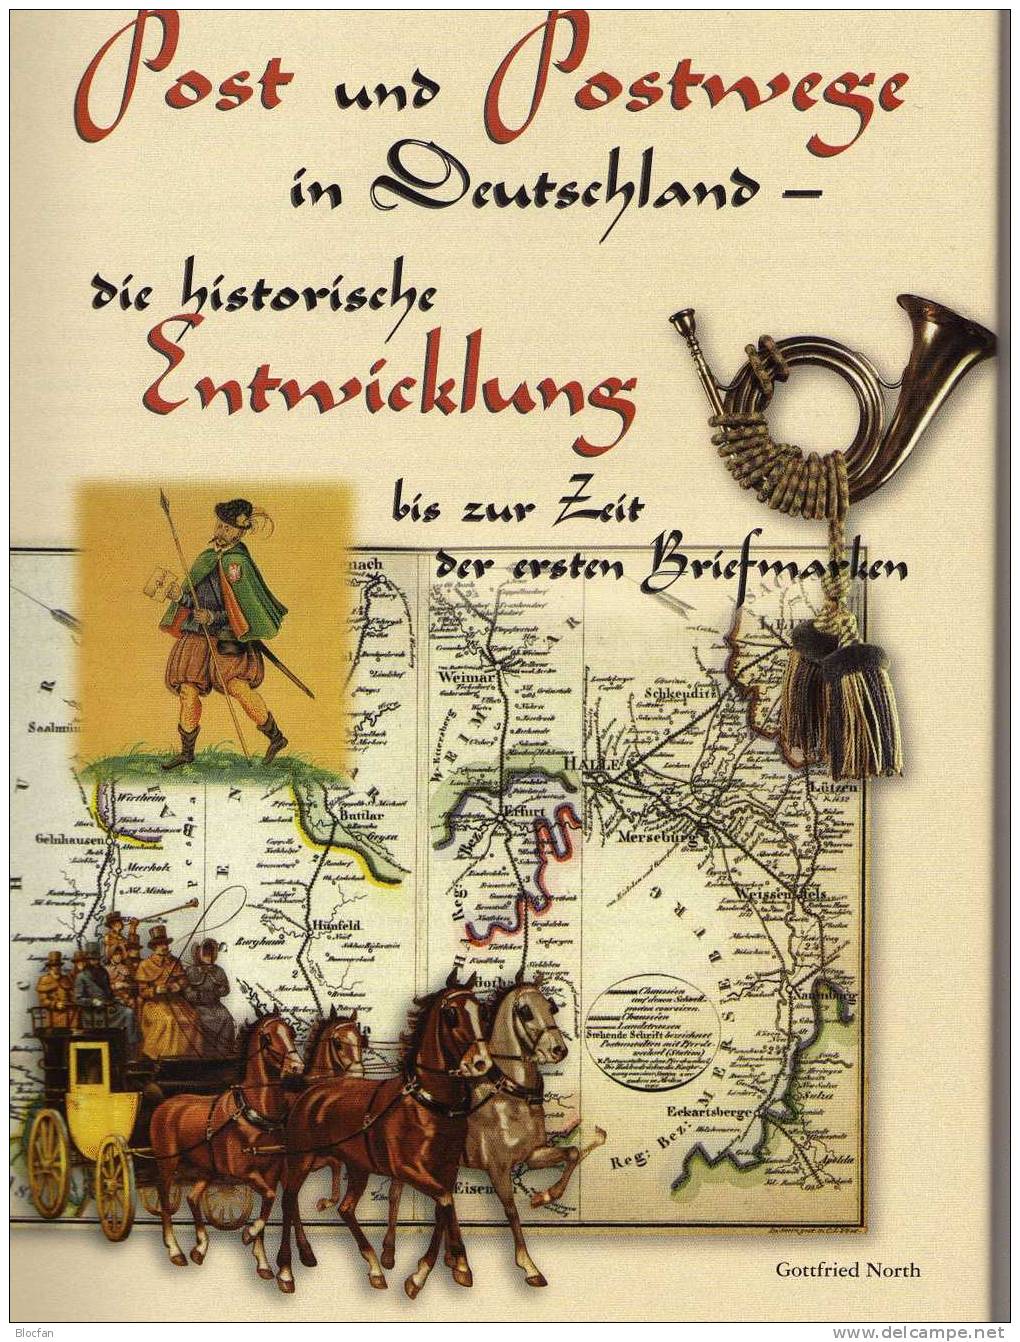 150 Jahre Deutsche Briefmarke1998 Antiquarisch 24€ Motivation Für Sammler Band I Special Documents History Book Germany - Bibliographies